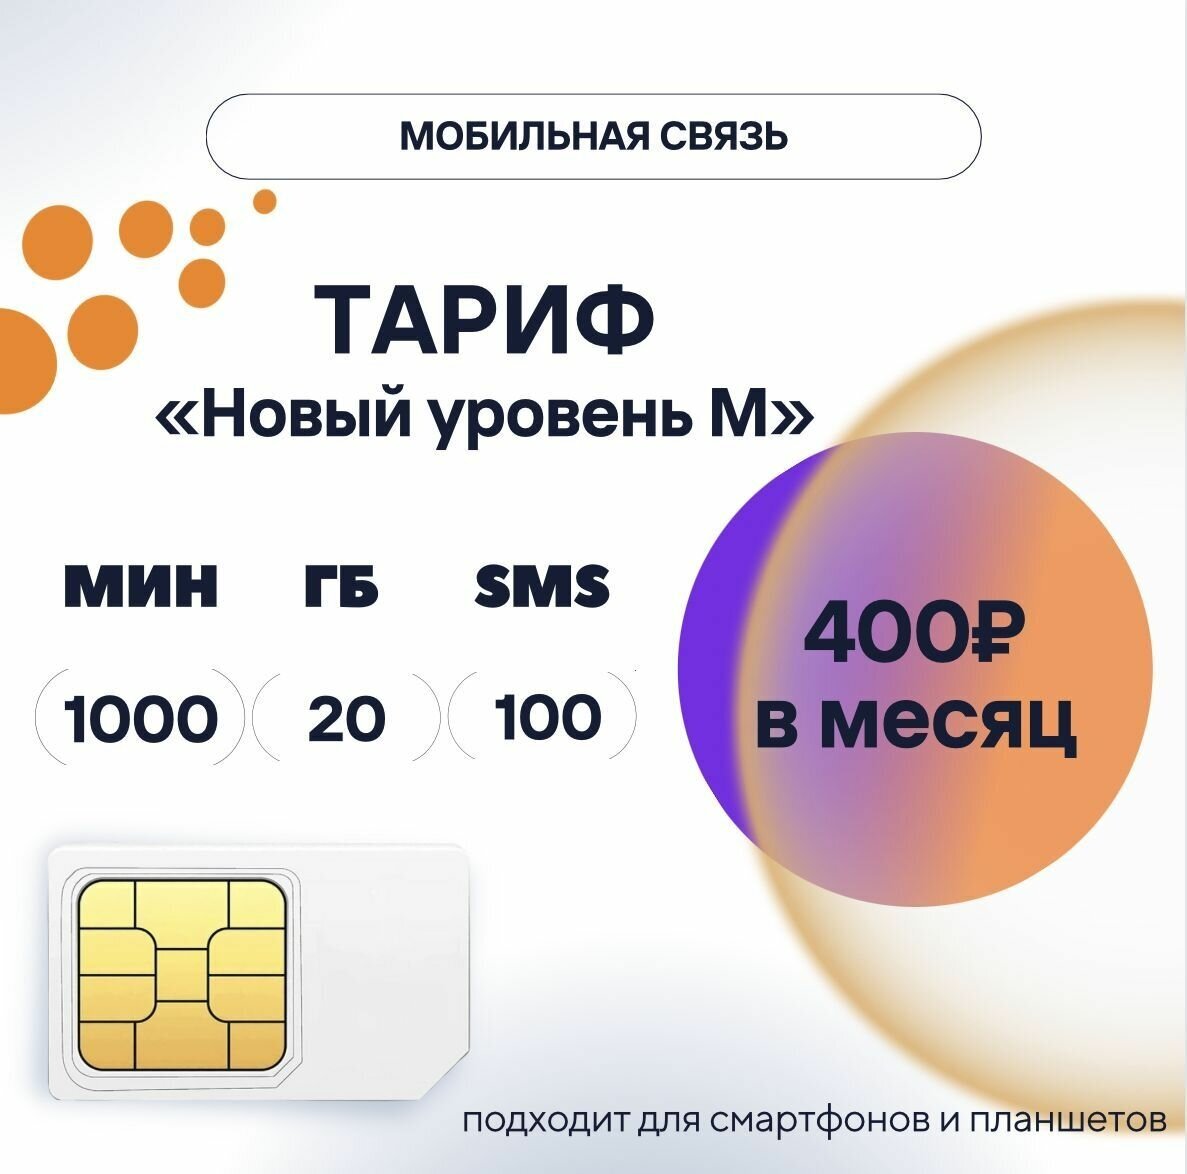 SIM-карта тариф "Новый уровень M" за 400 руб/мес сим карта для телефона